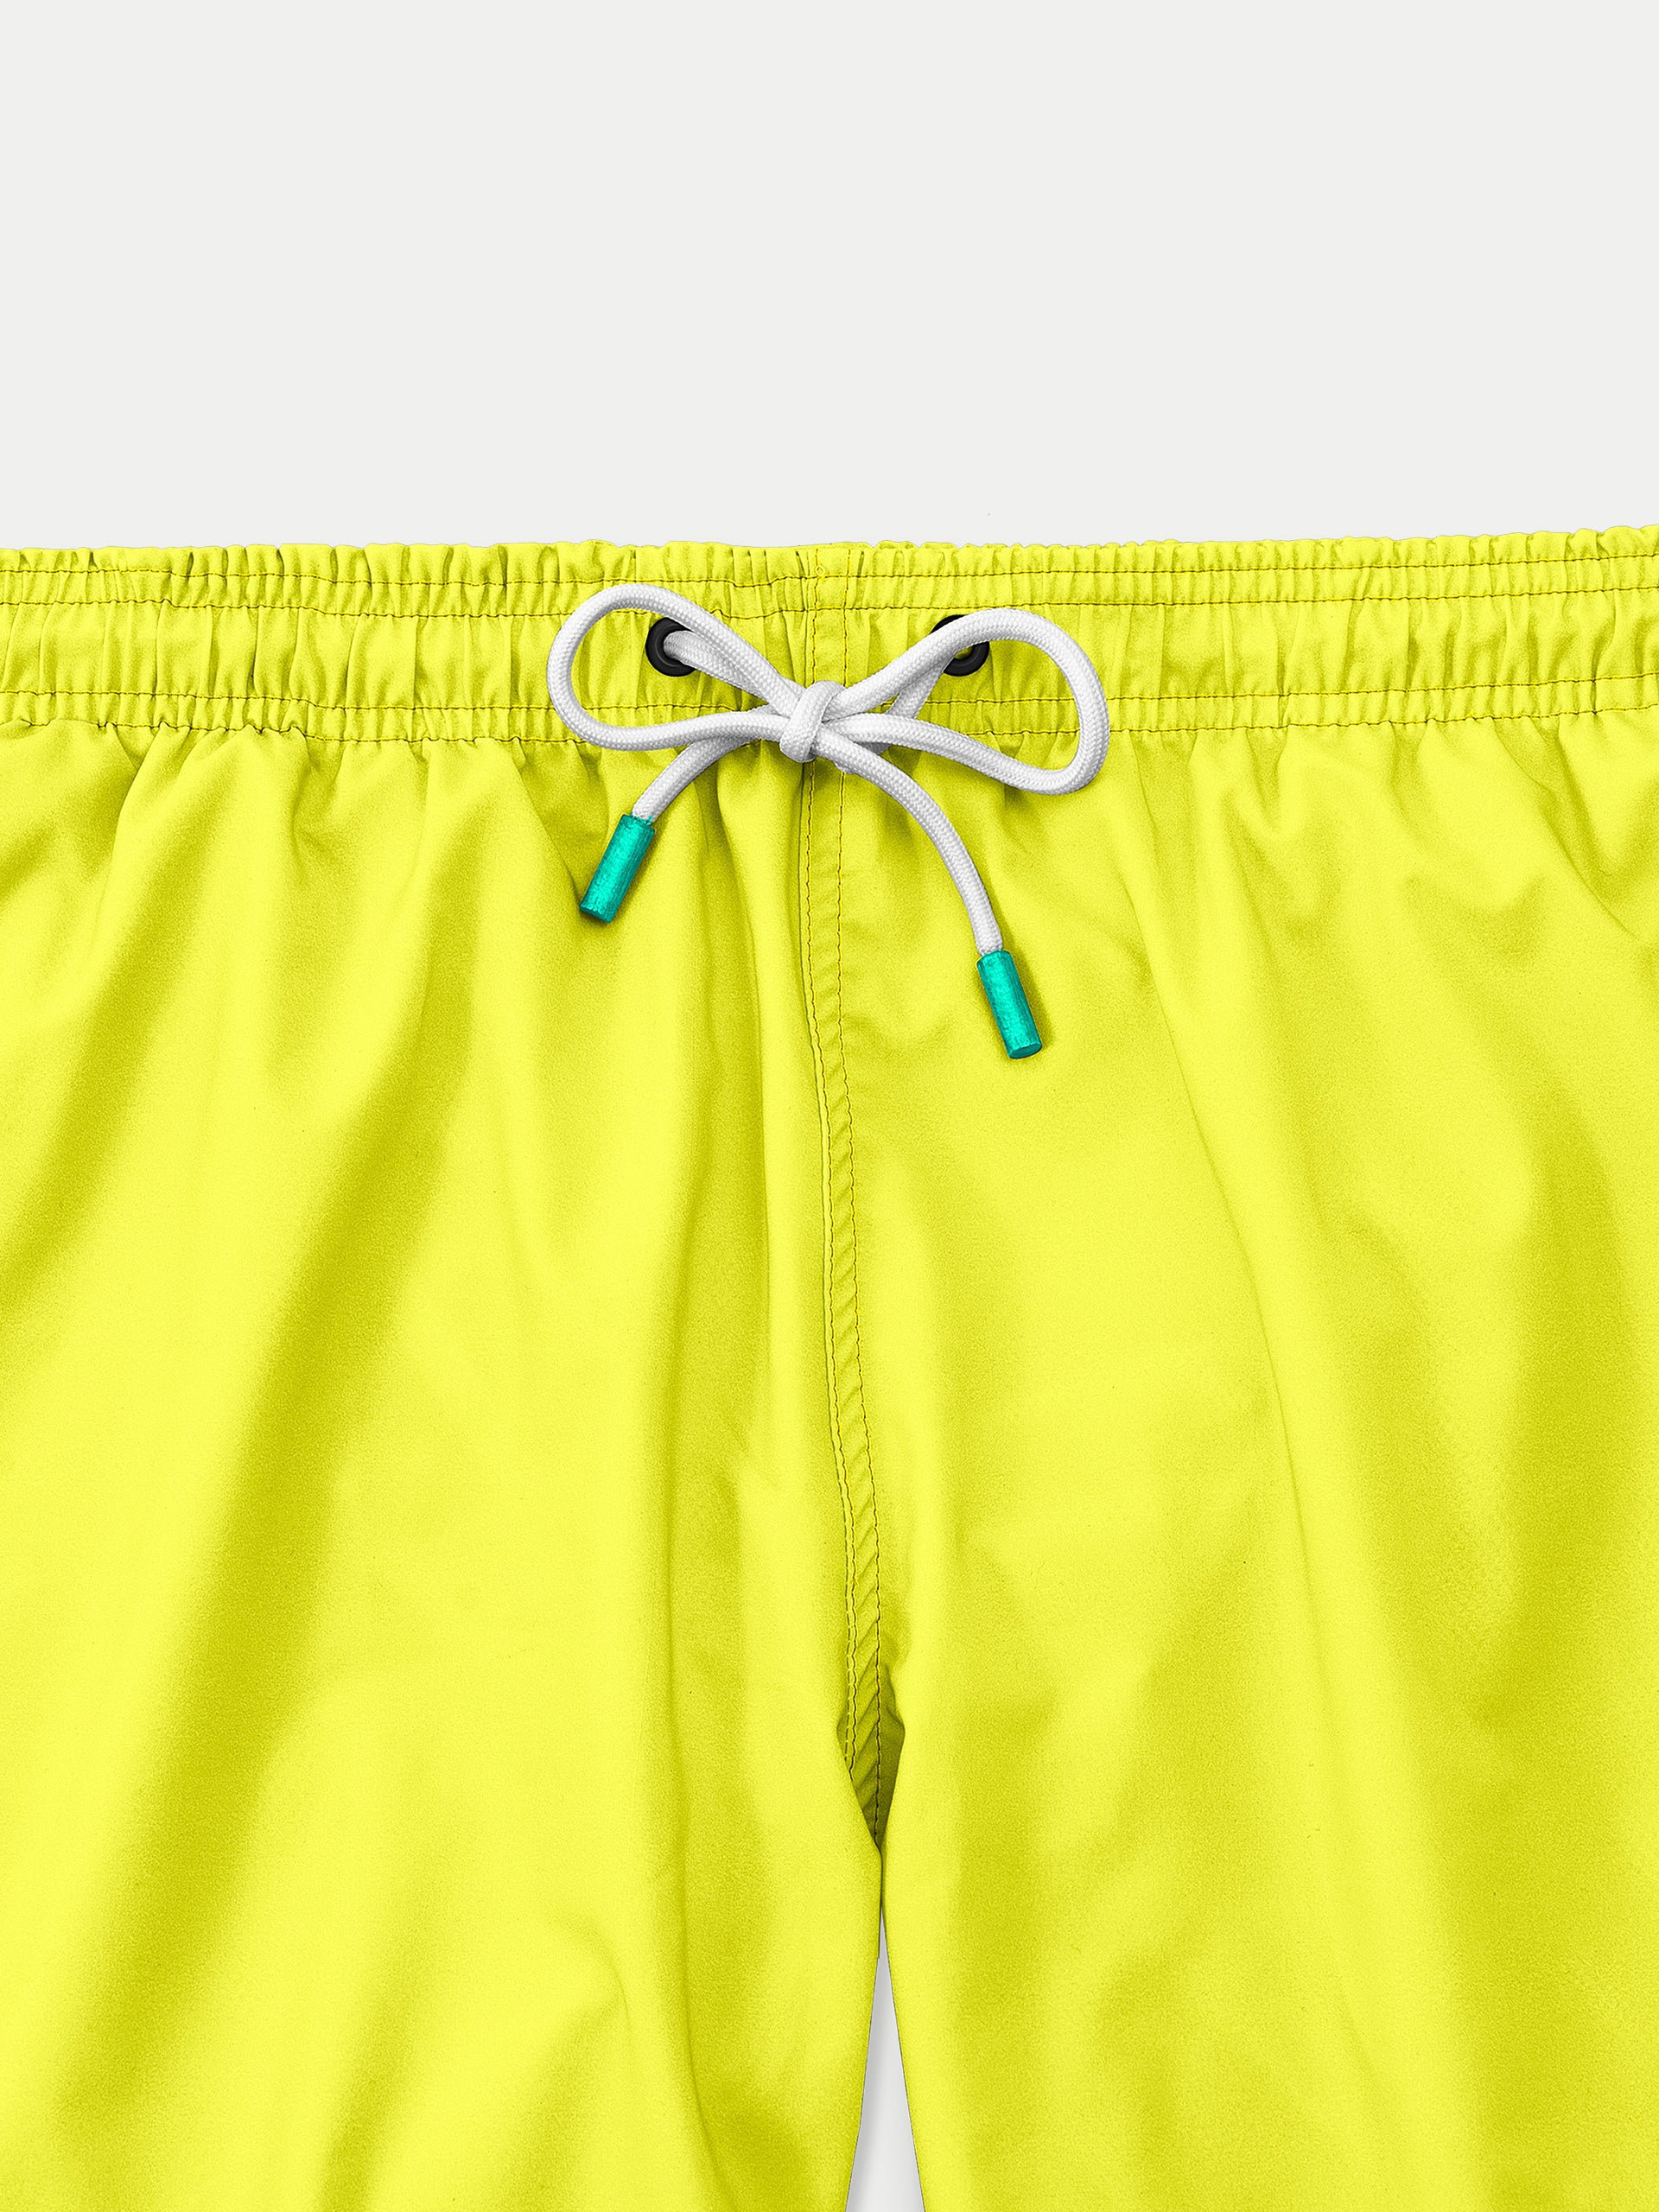 'Basic Yellow' Swim Trunks for Men by 98 Coast Av.